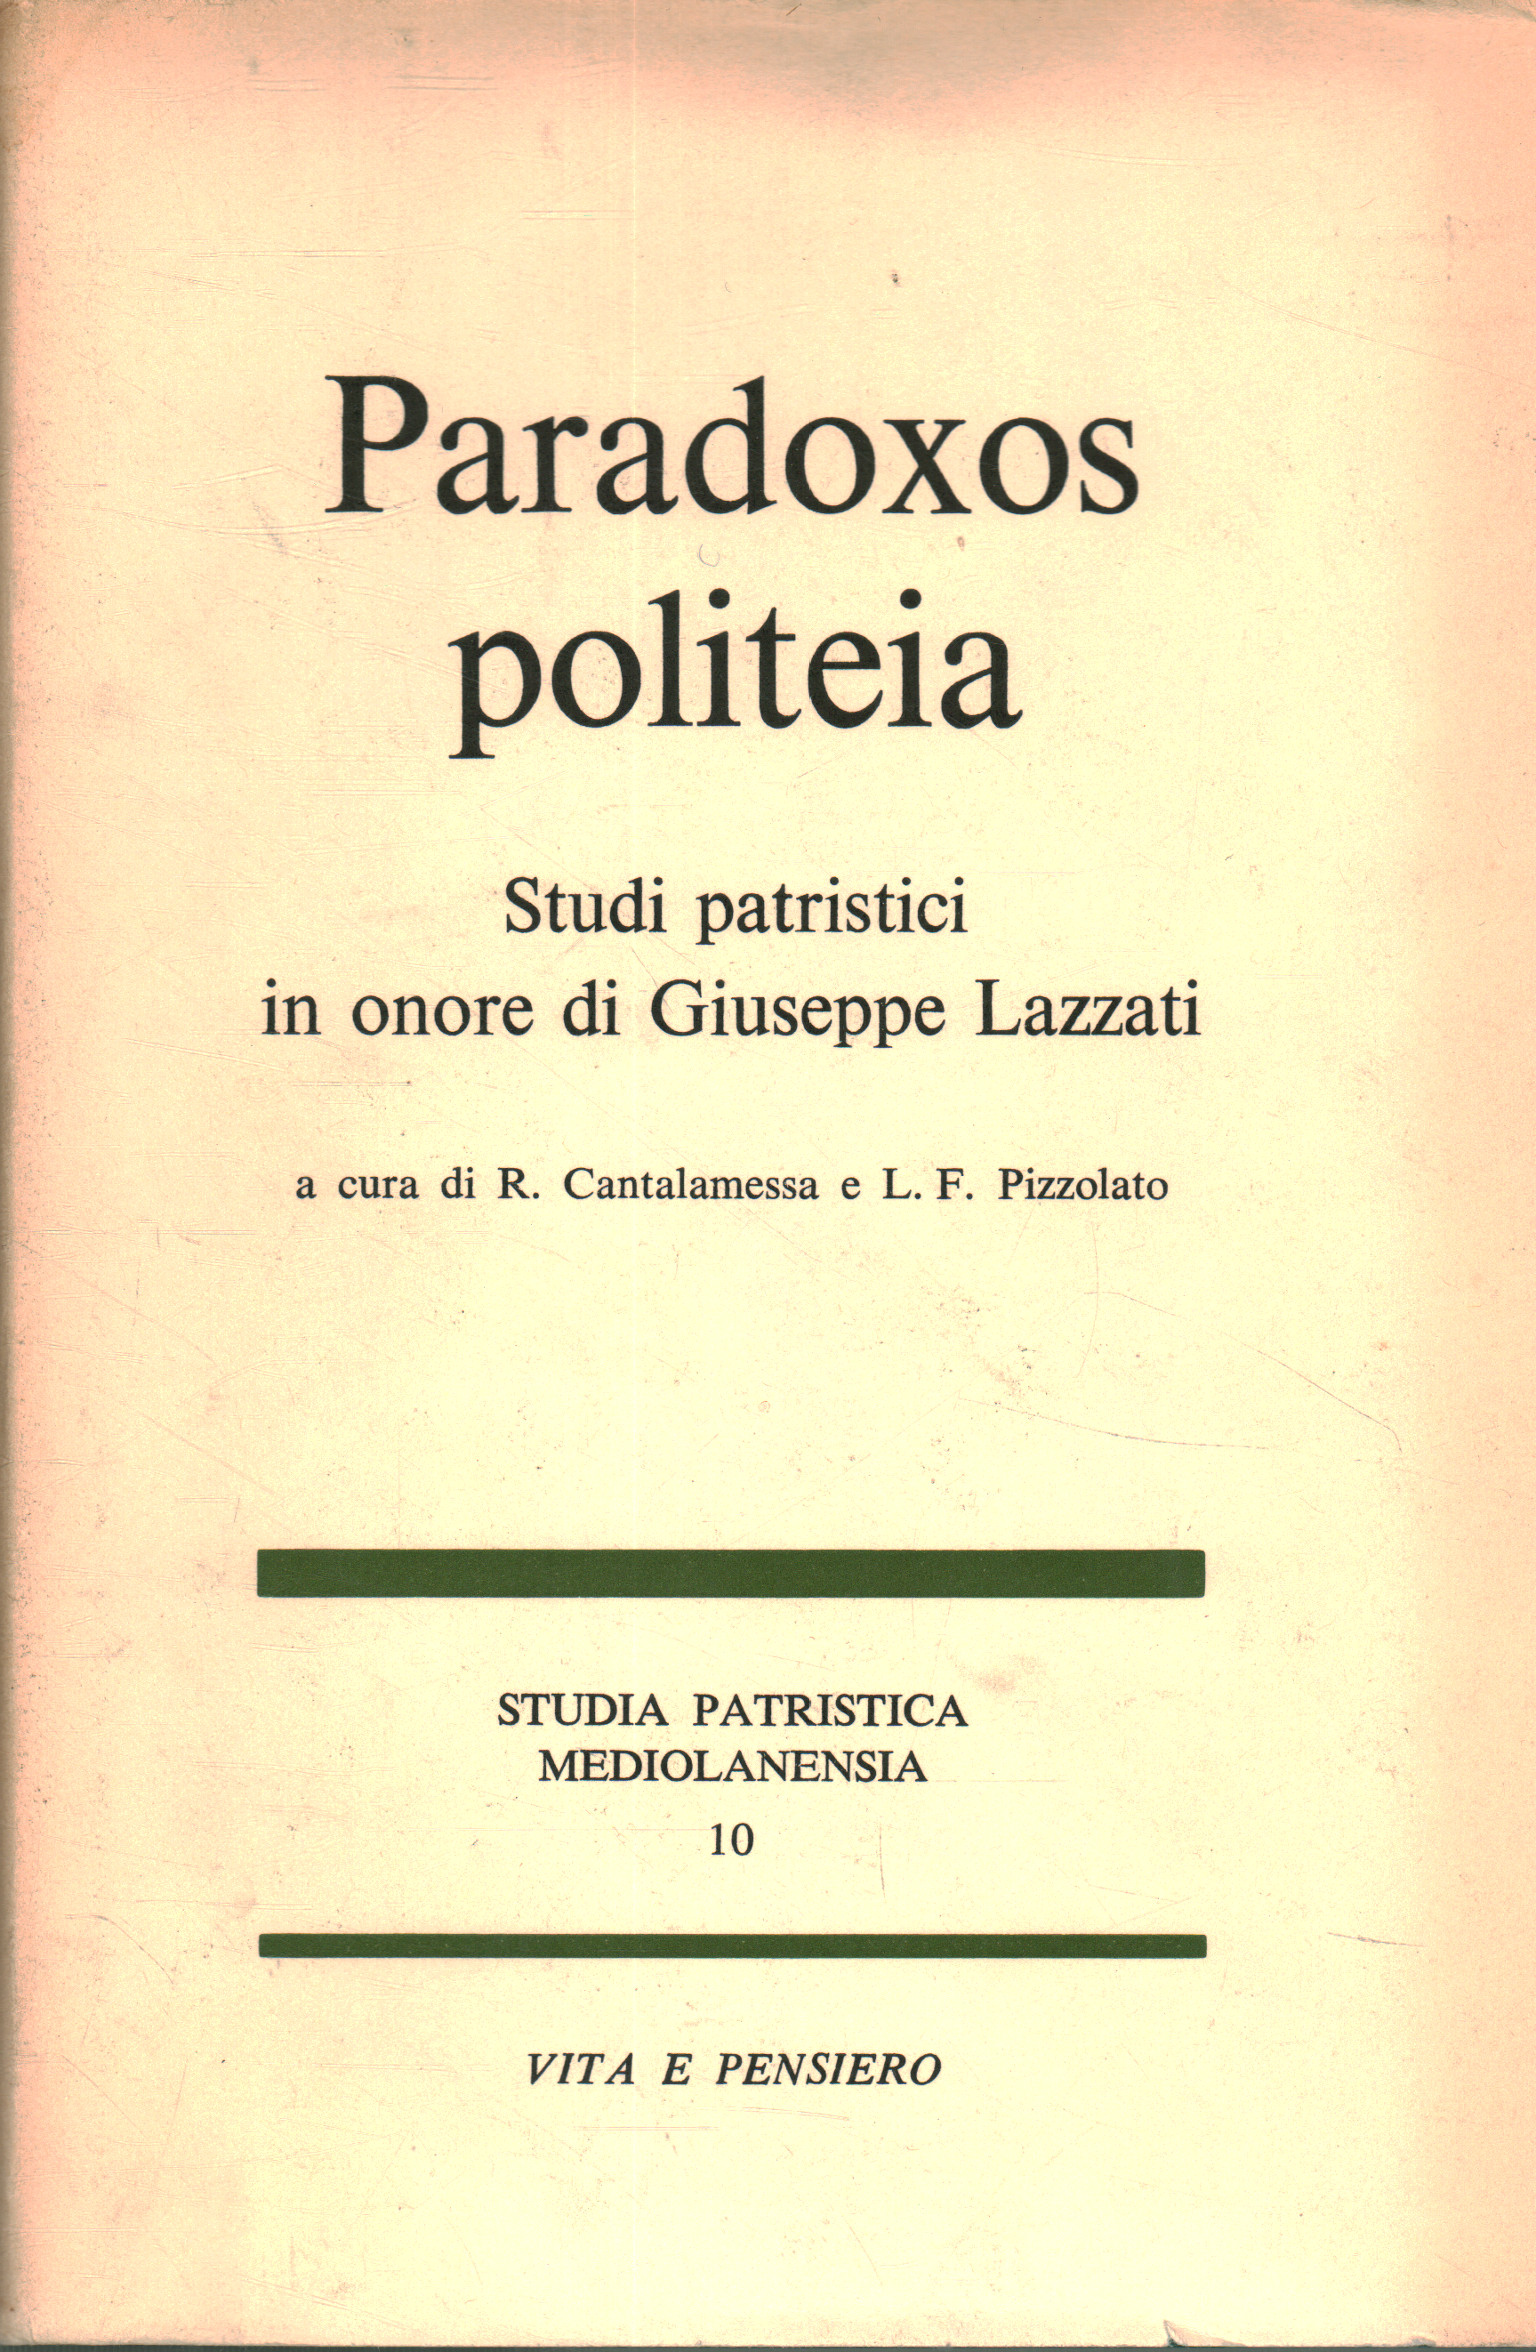 Paradoxox politeia. Estudios patrísticos en honor a G, R. Cantalamessa L.F. Pizzolato